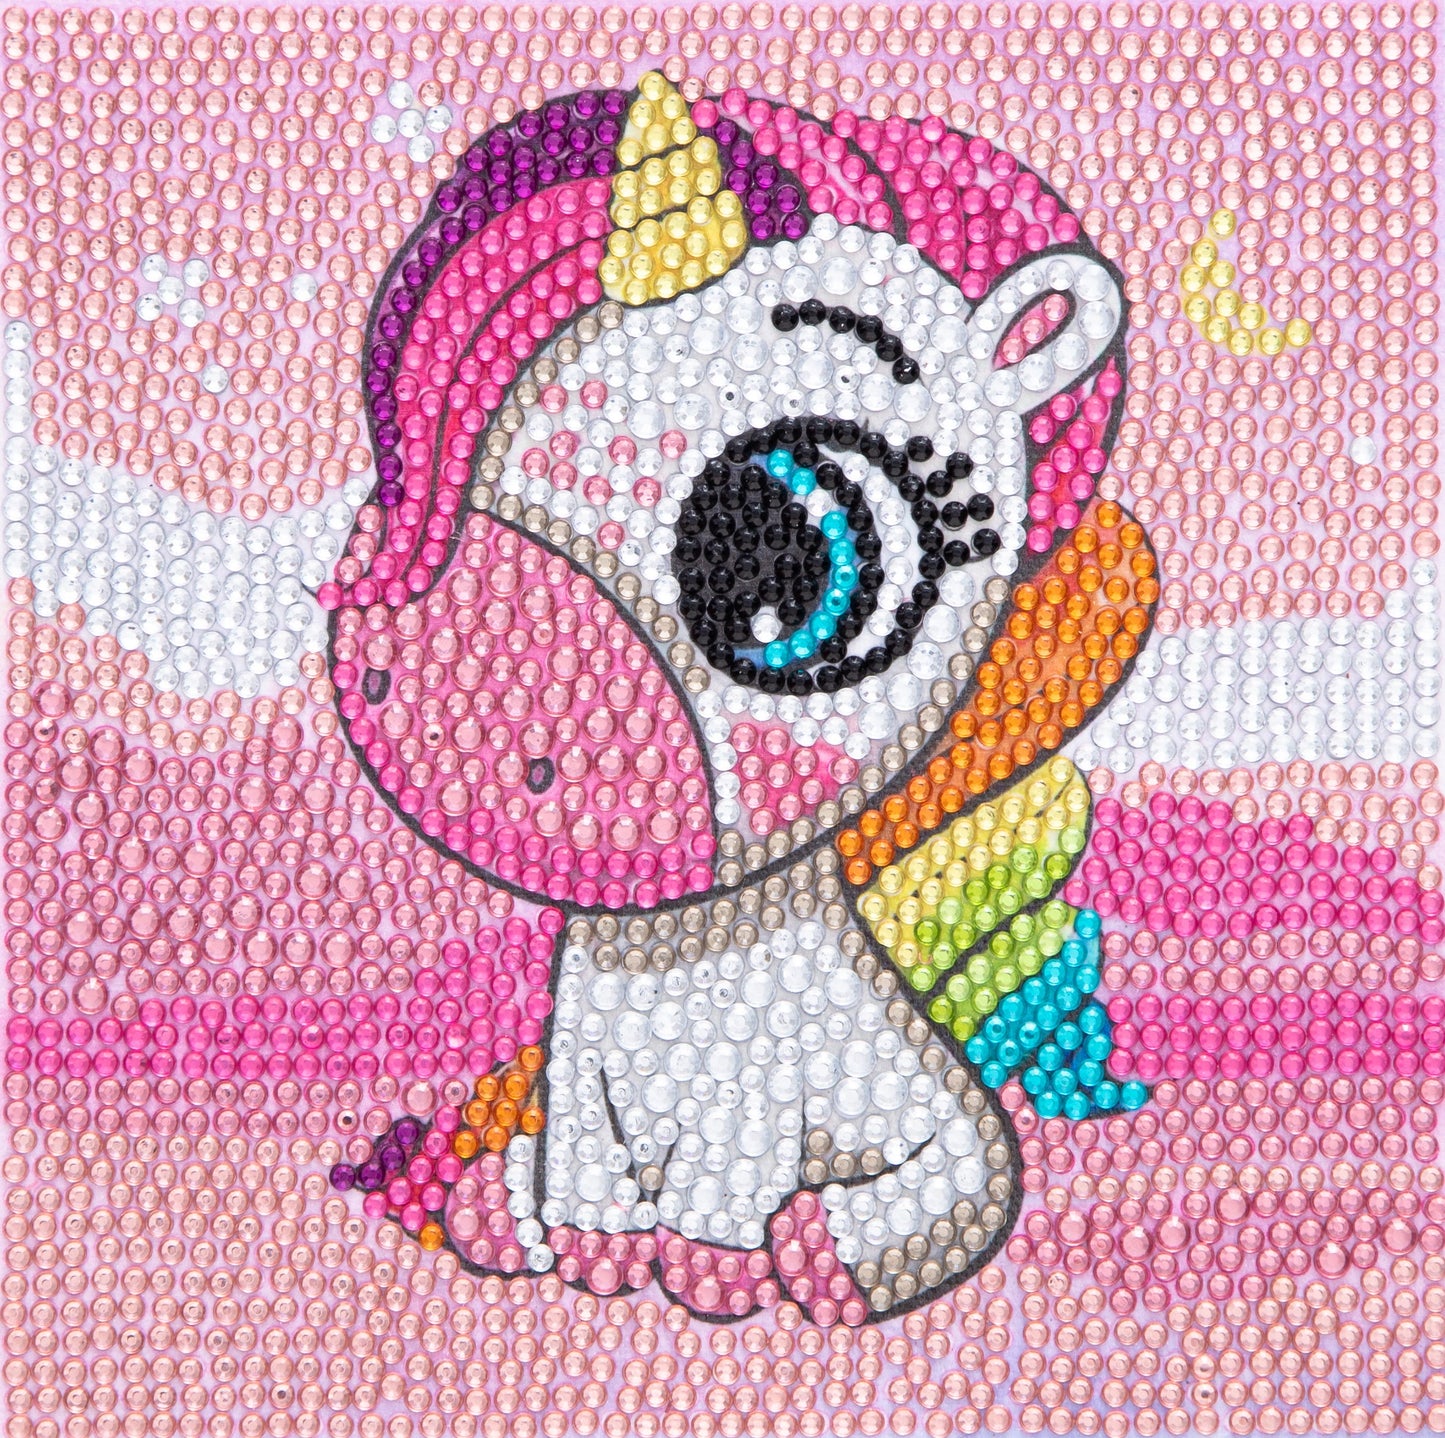 Pony Unicorn - Special Diamond painting